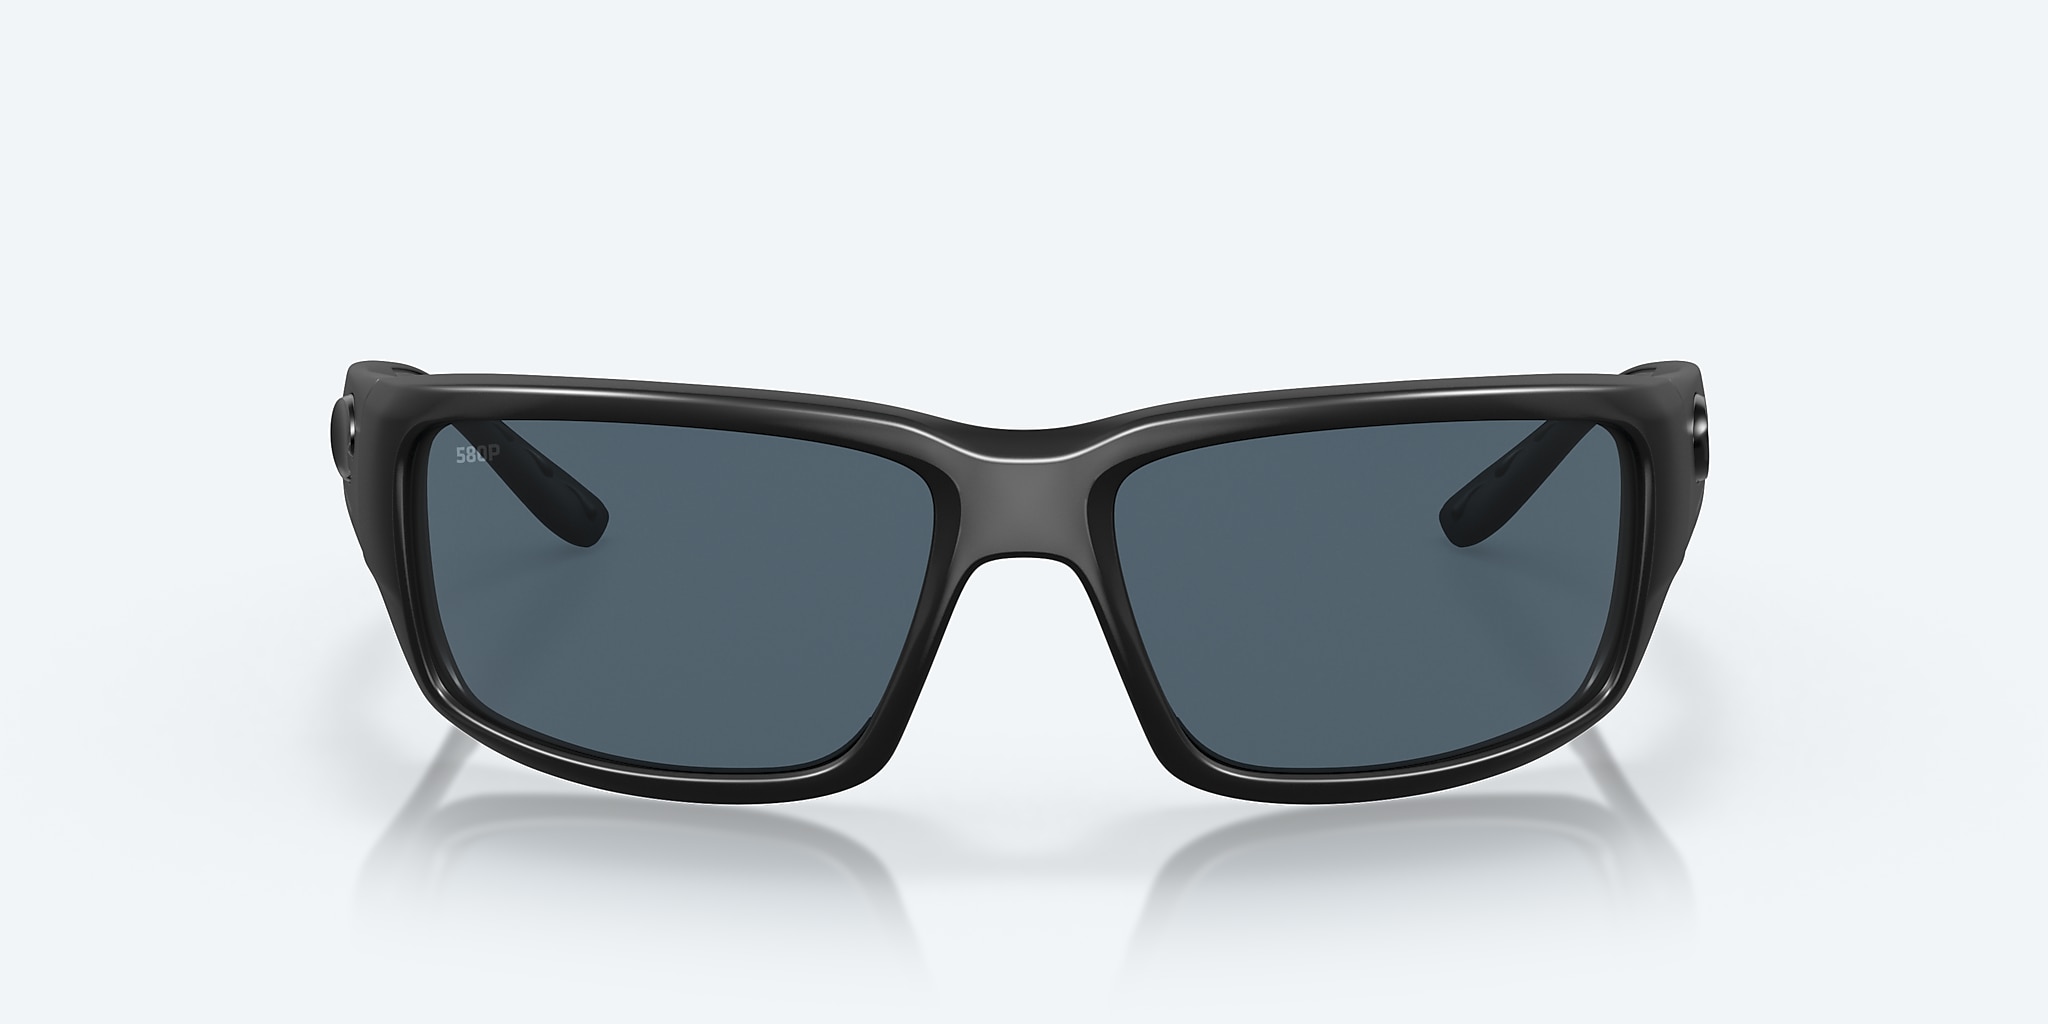 Fantail Polarized Sunglasses in Gray | Costa Del Mar®